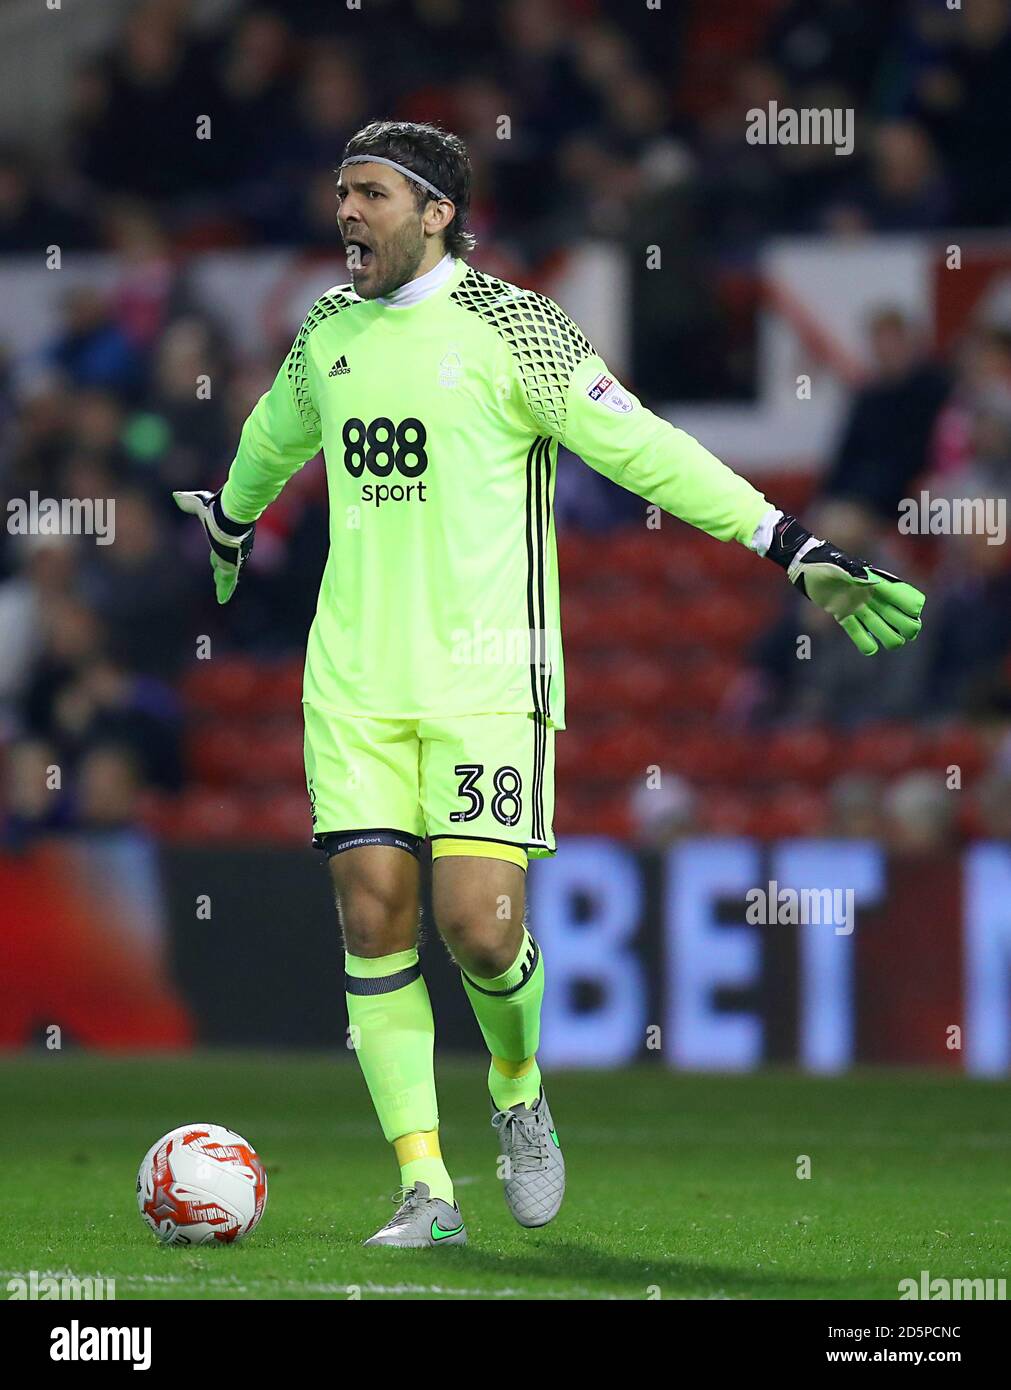 Nottingham Forest goalkeeper Vladimir Stojkovic Stock Photo